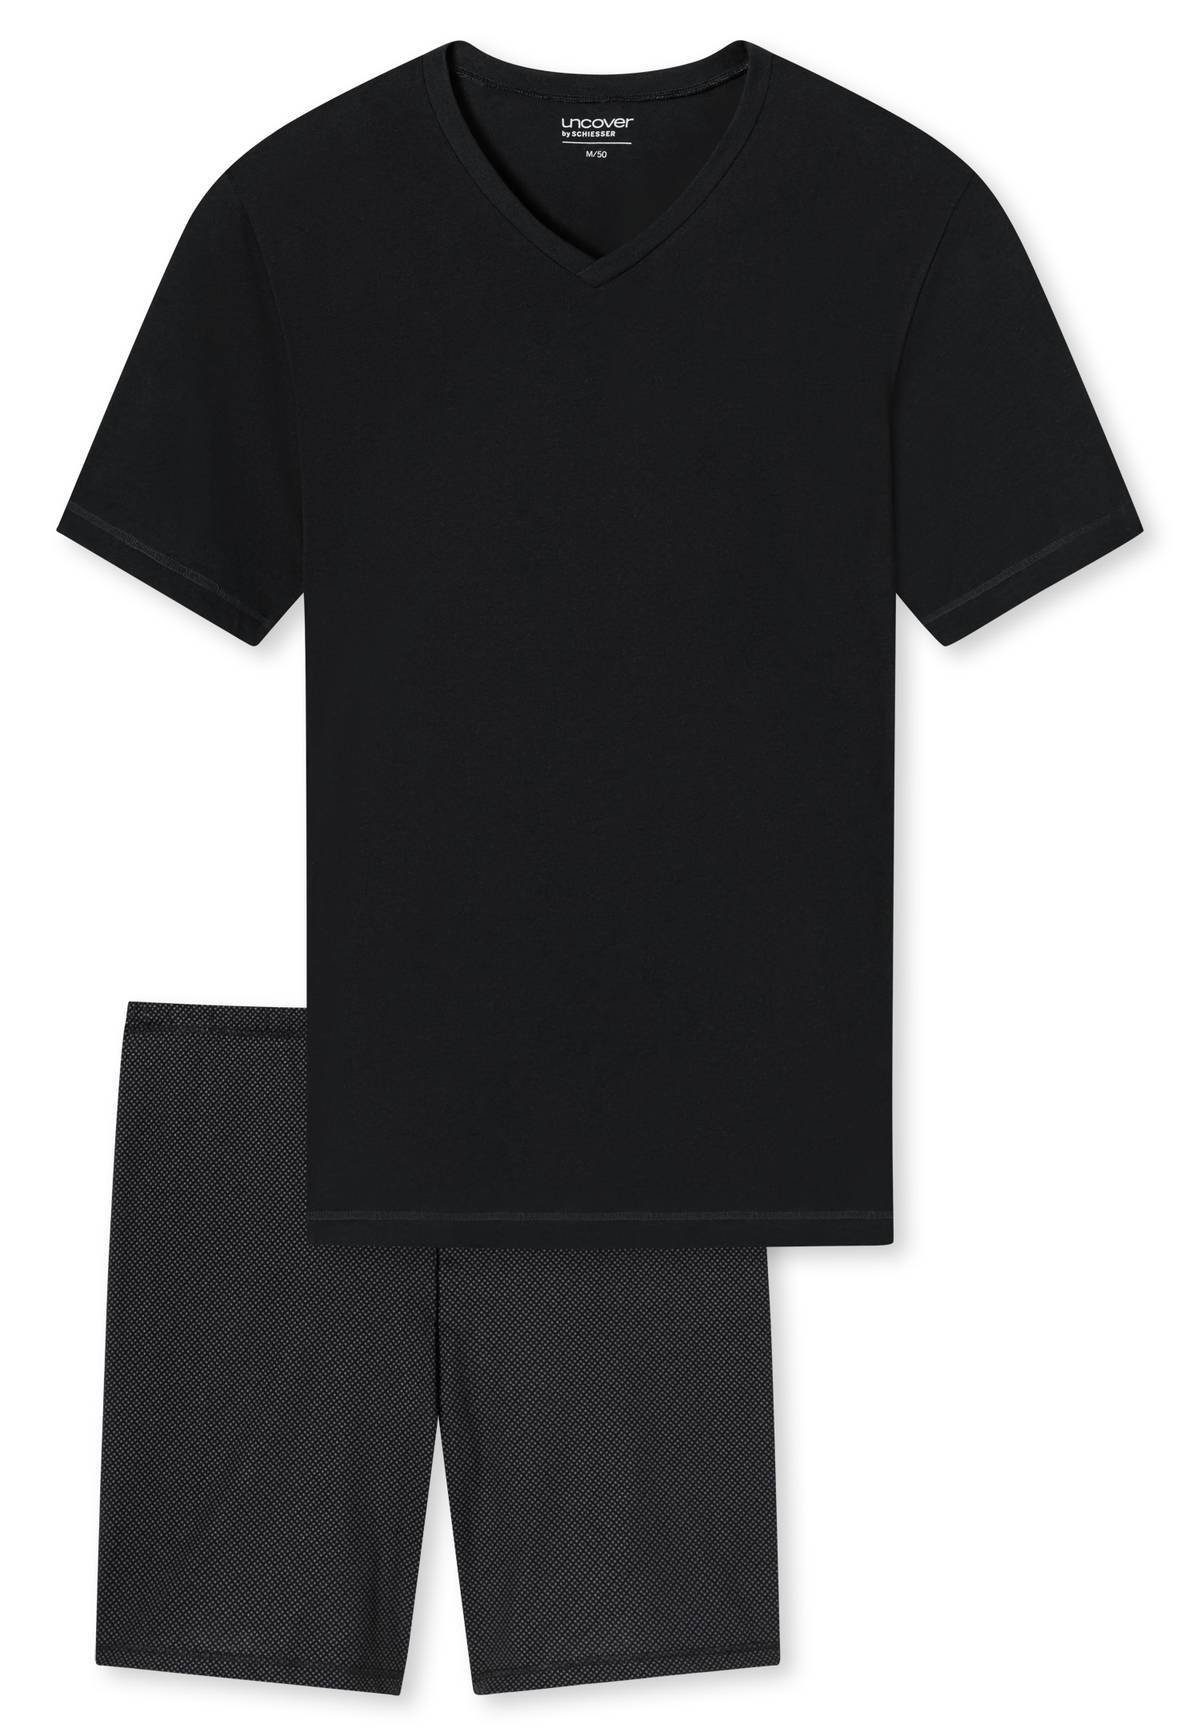 Schlafanzug uncover Set Schwarz 2-tlg. Pyjama Herren - kurz SCHIESSER by